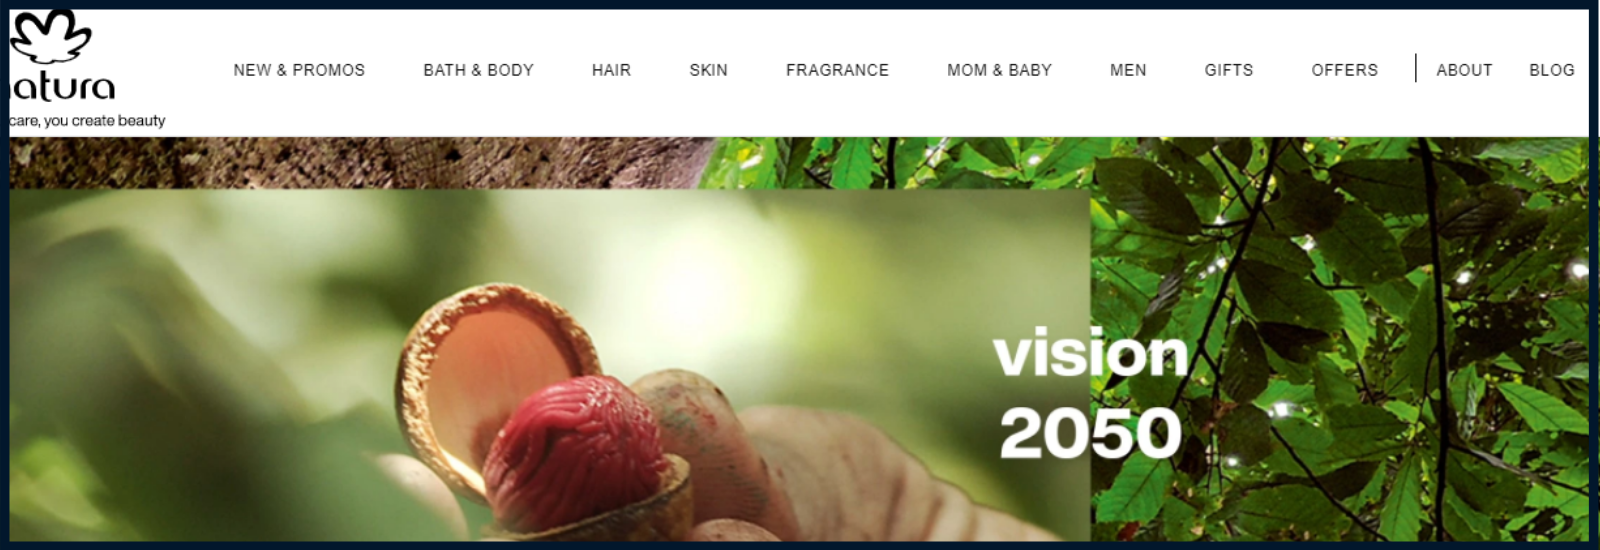 Natura's website screenshot of homepage